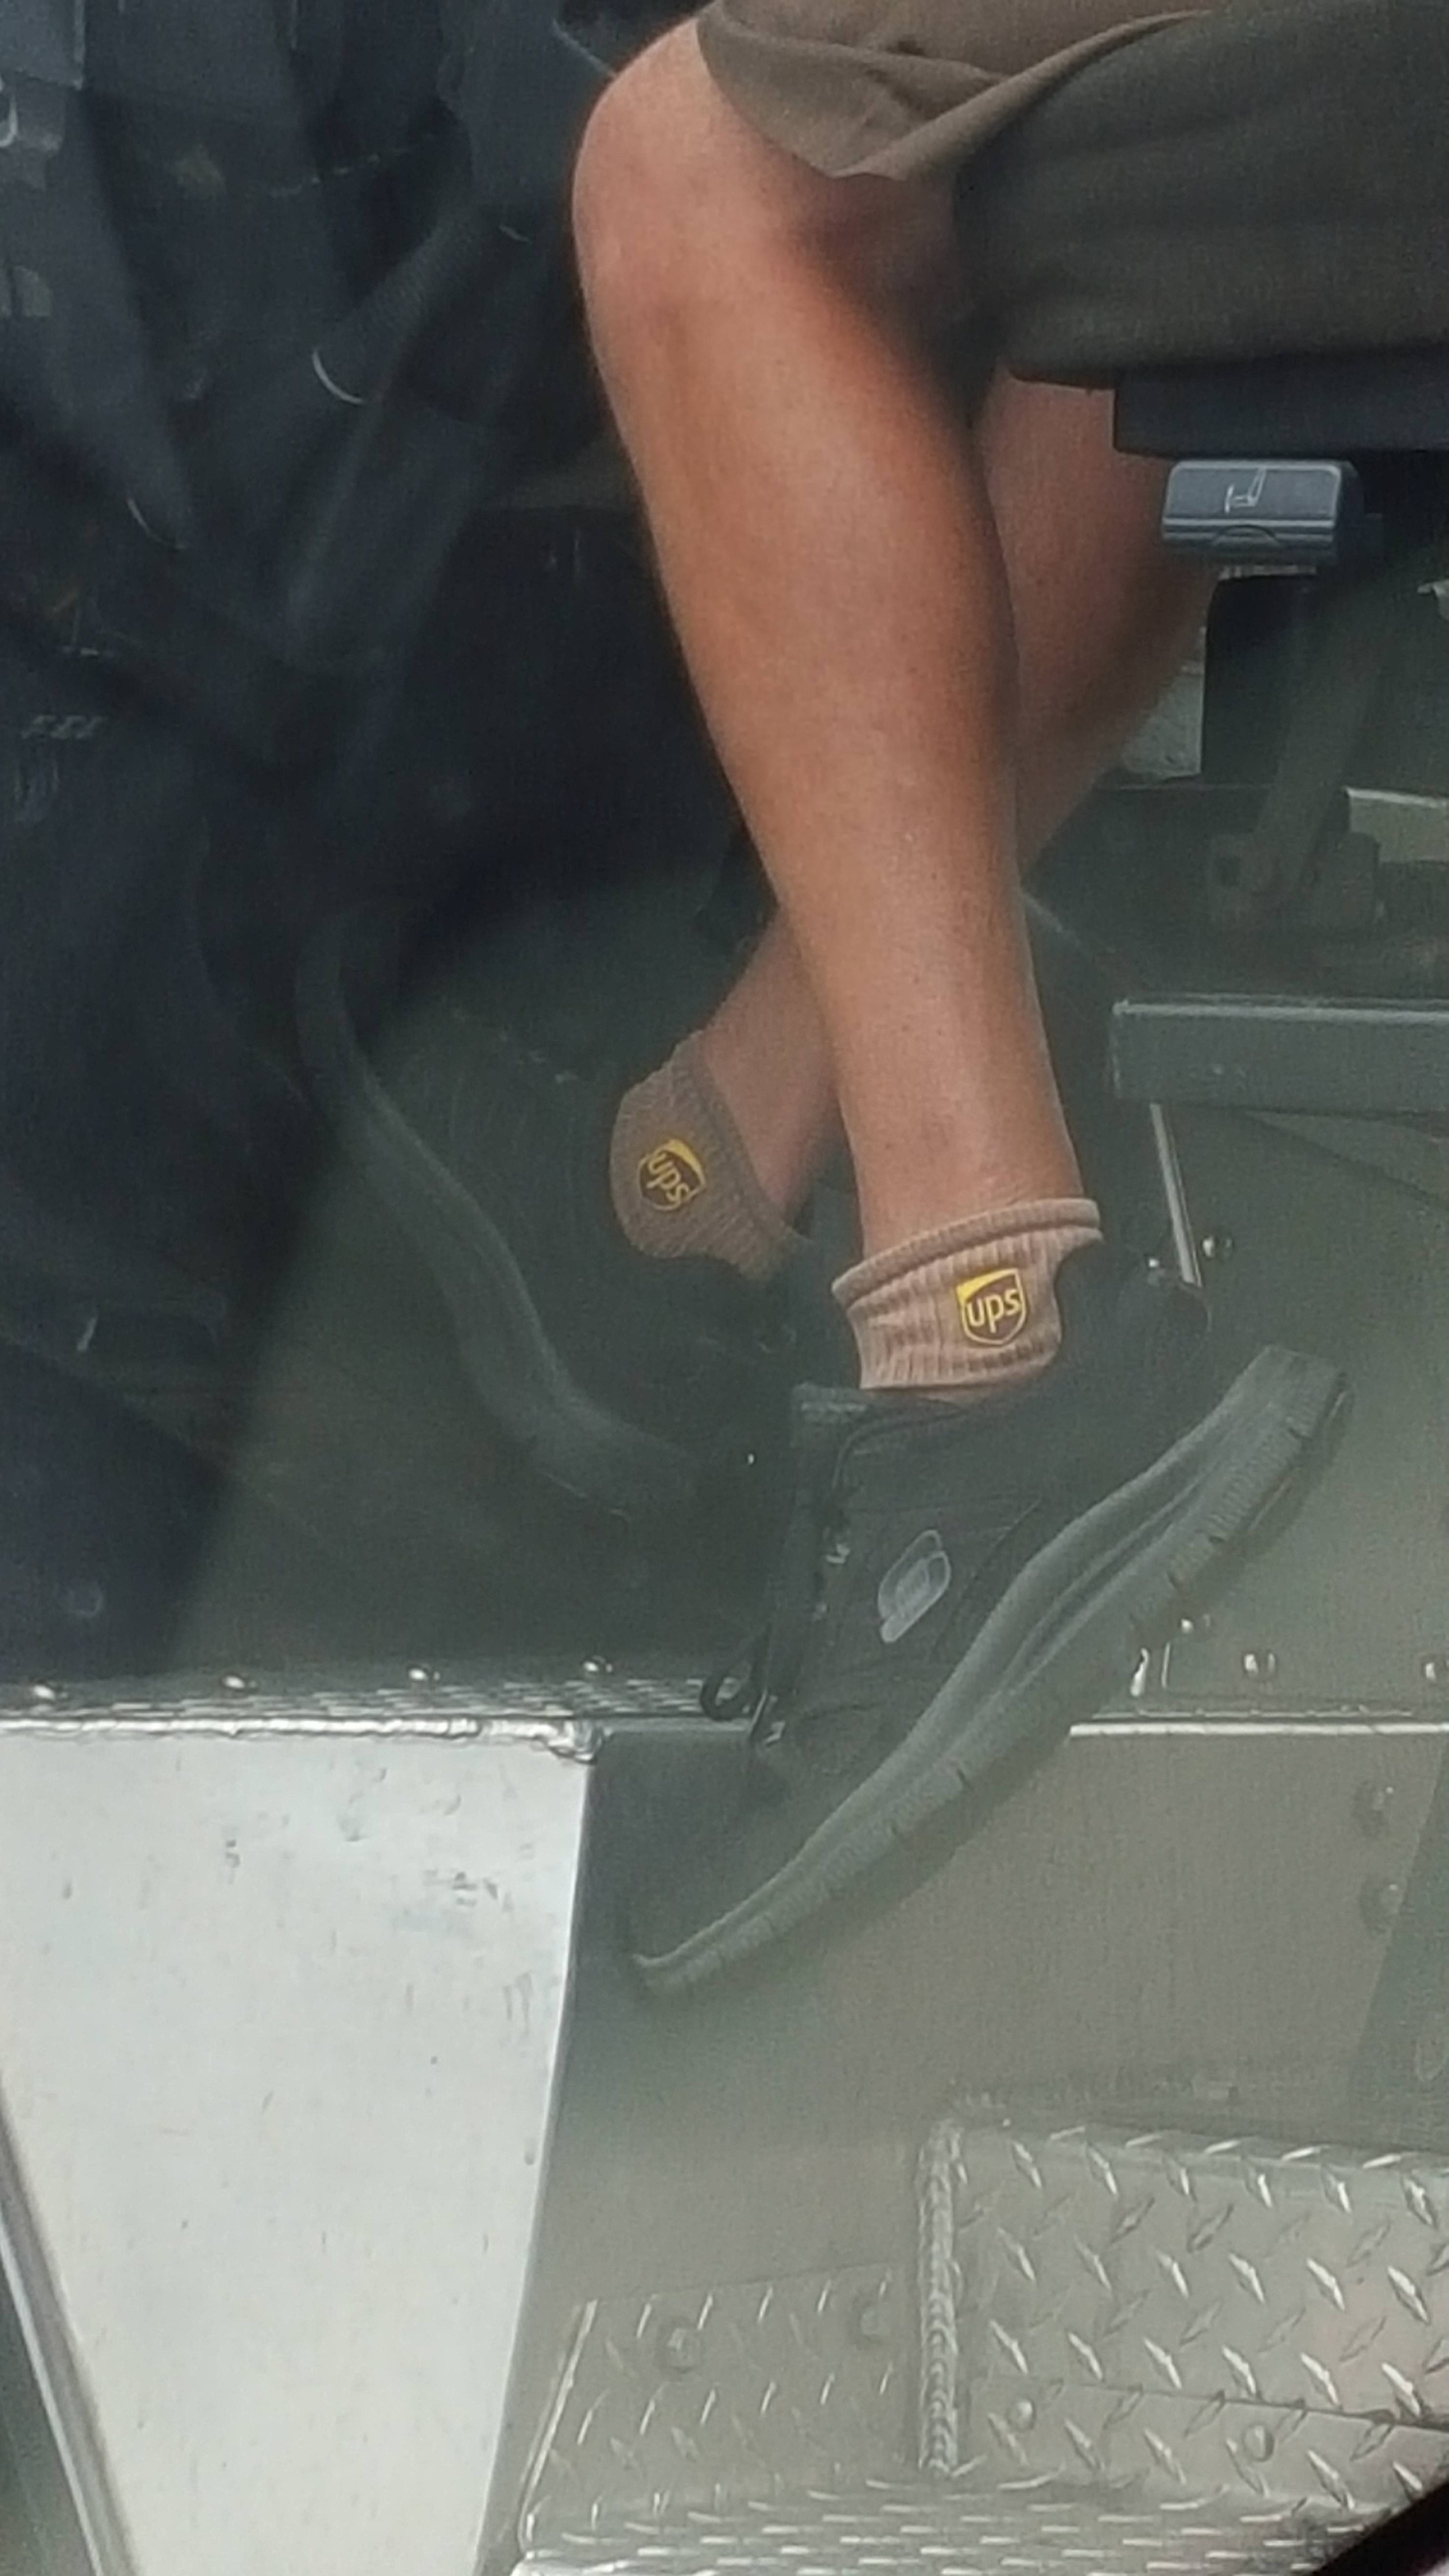 Closeup of a UPS driver&#x27;s socks